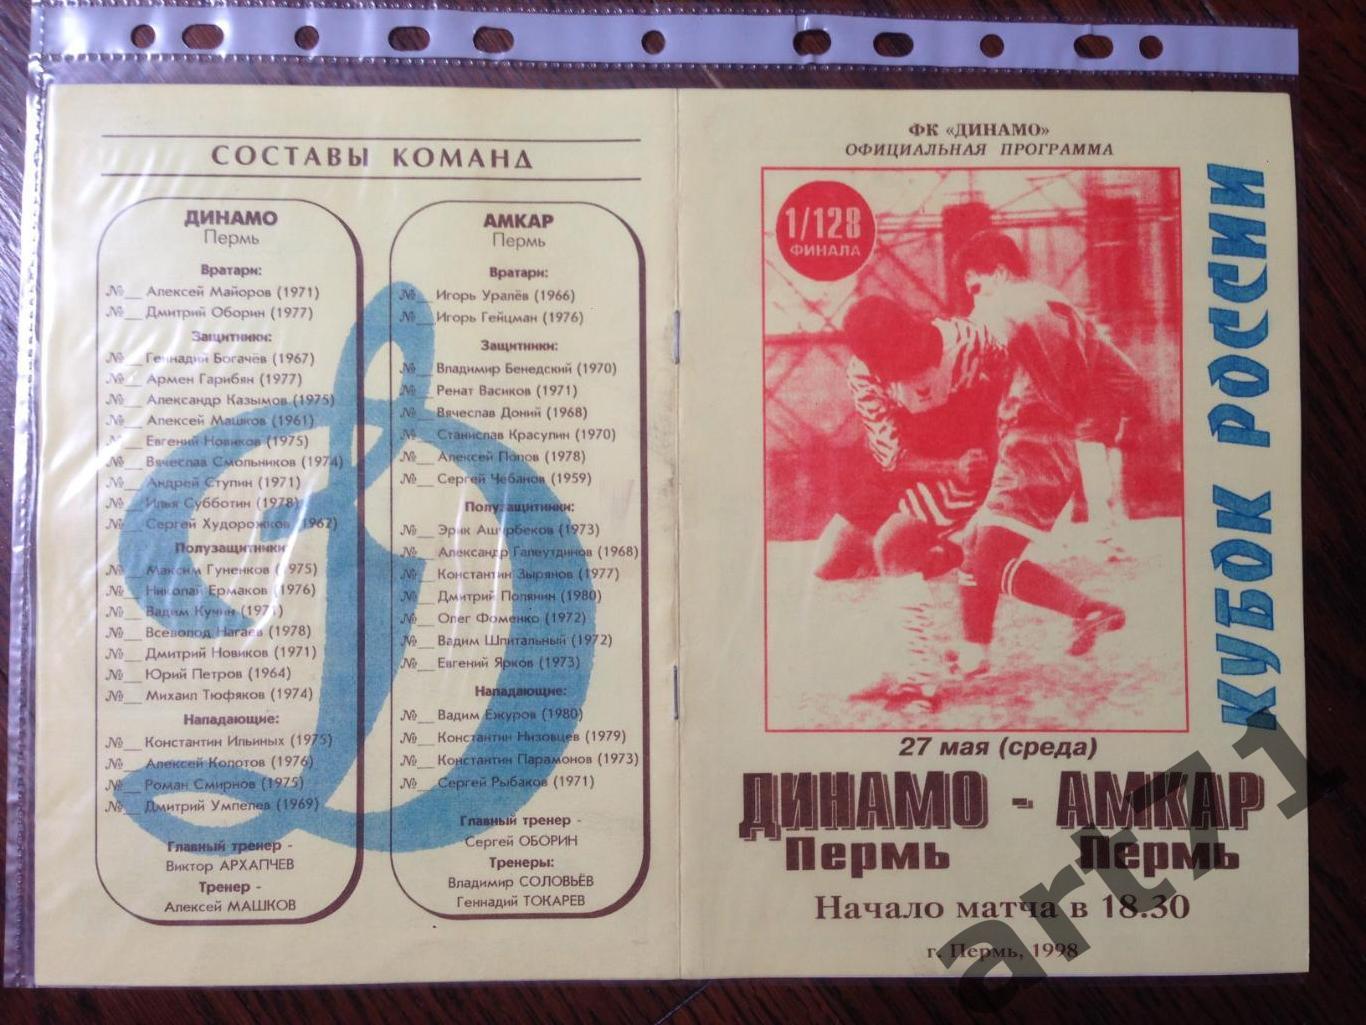 + Динамо Пермь - Амкар Пермь 1998 Кубок России